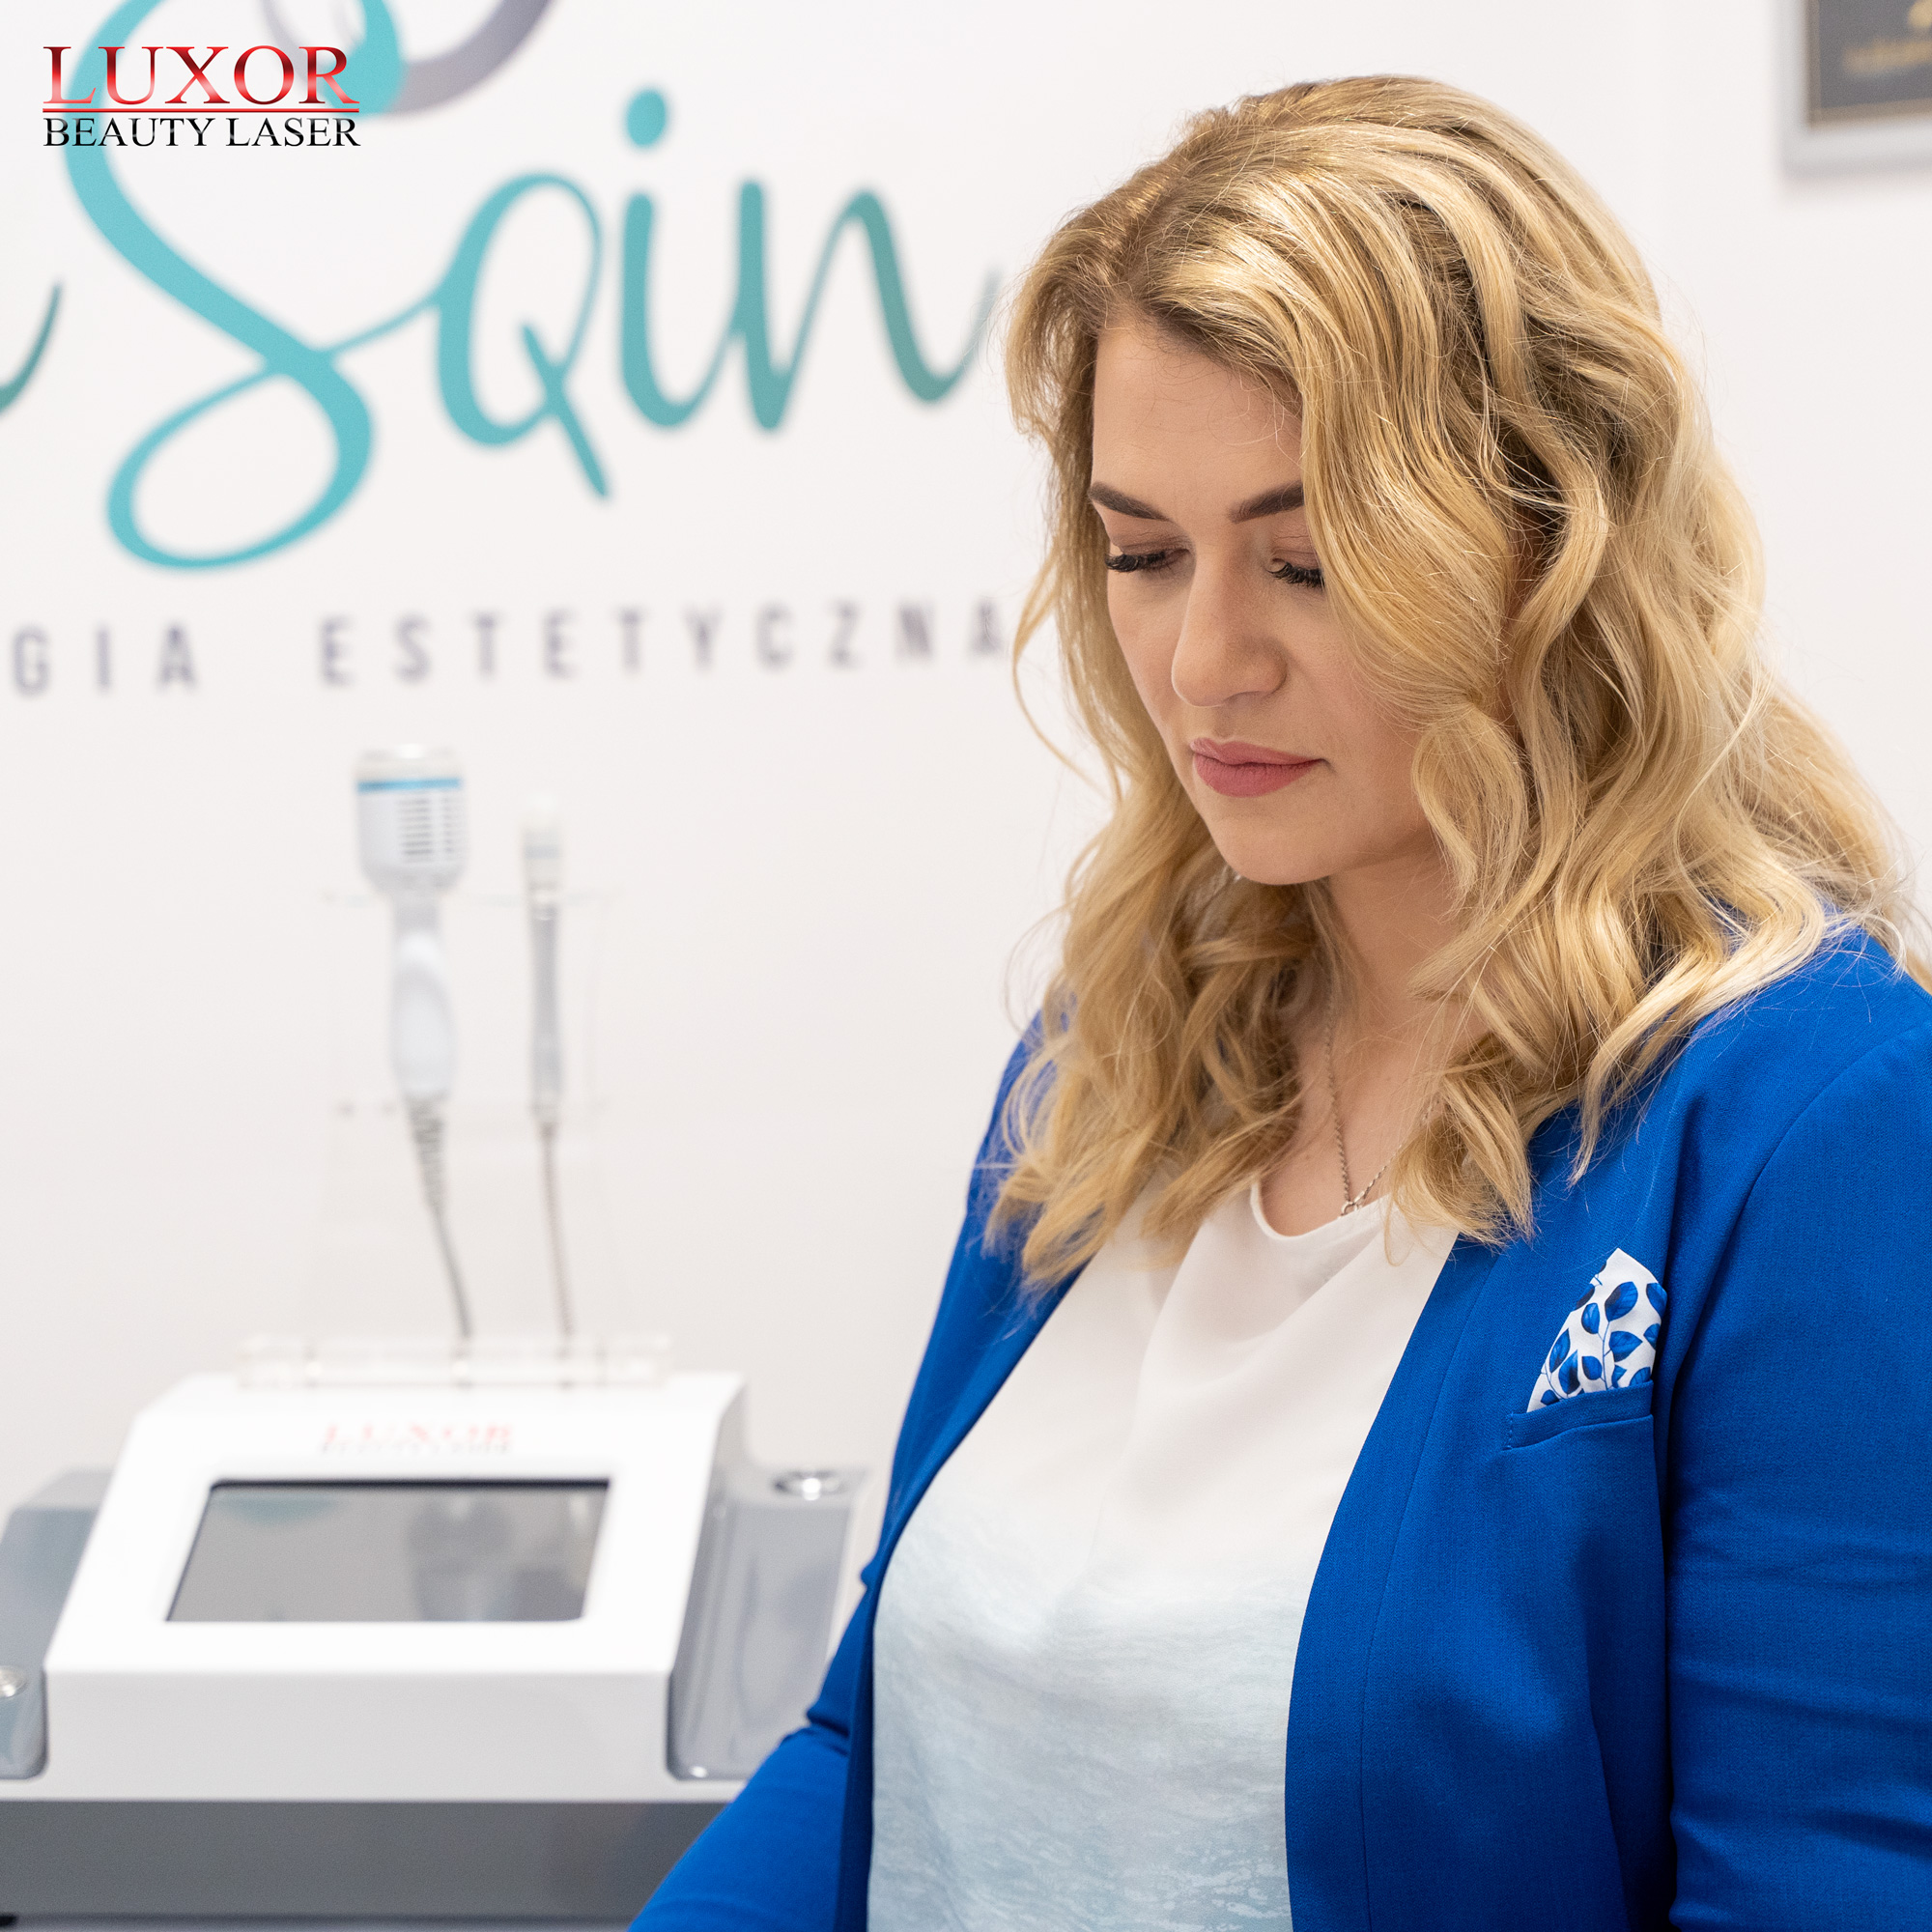 Prowadzimy szkolenie kosmetologiczne z obsługi maszyny Luxor Beauty Laser z dojazdem do klienta, w tym przypadku gabinetu w Czubrowicach